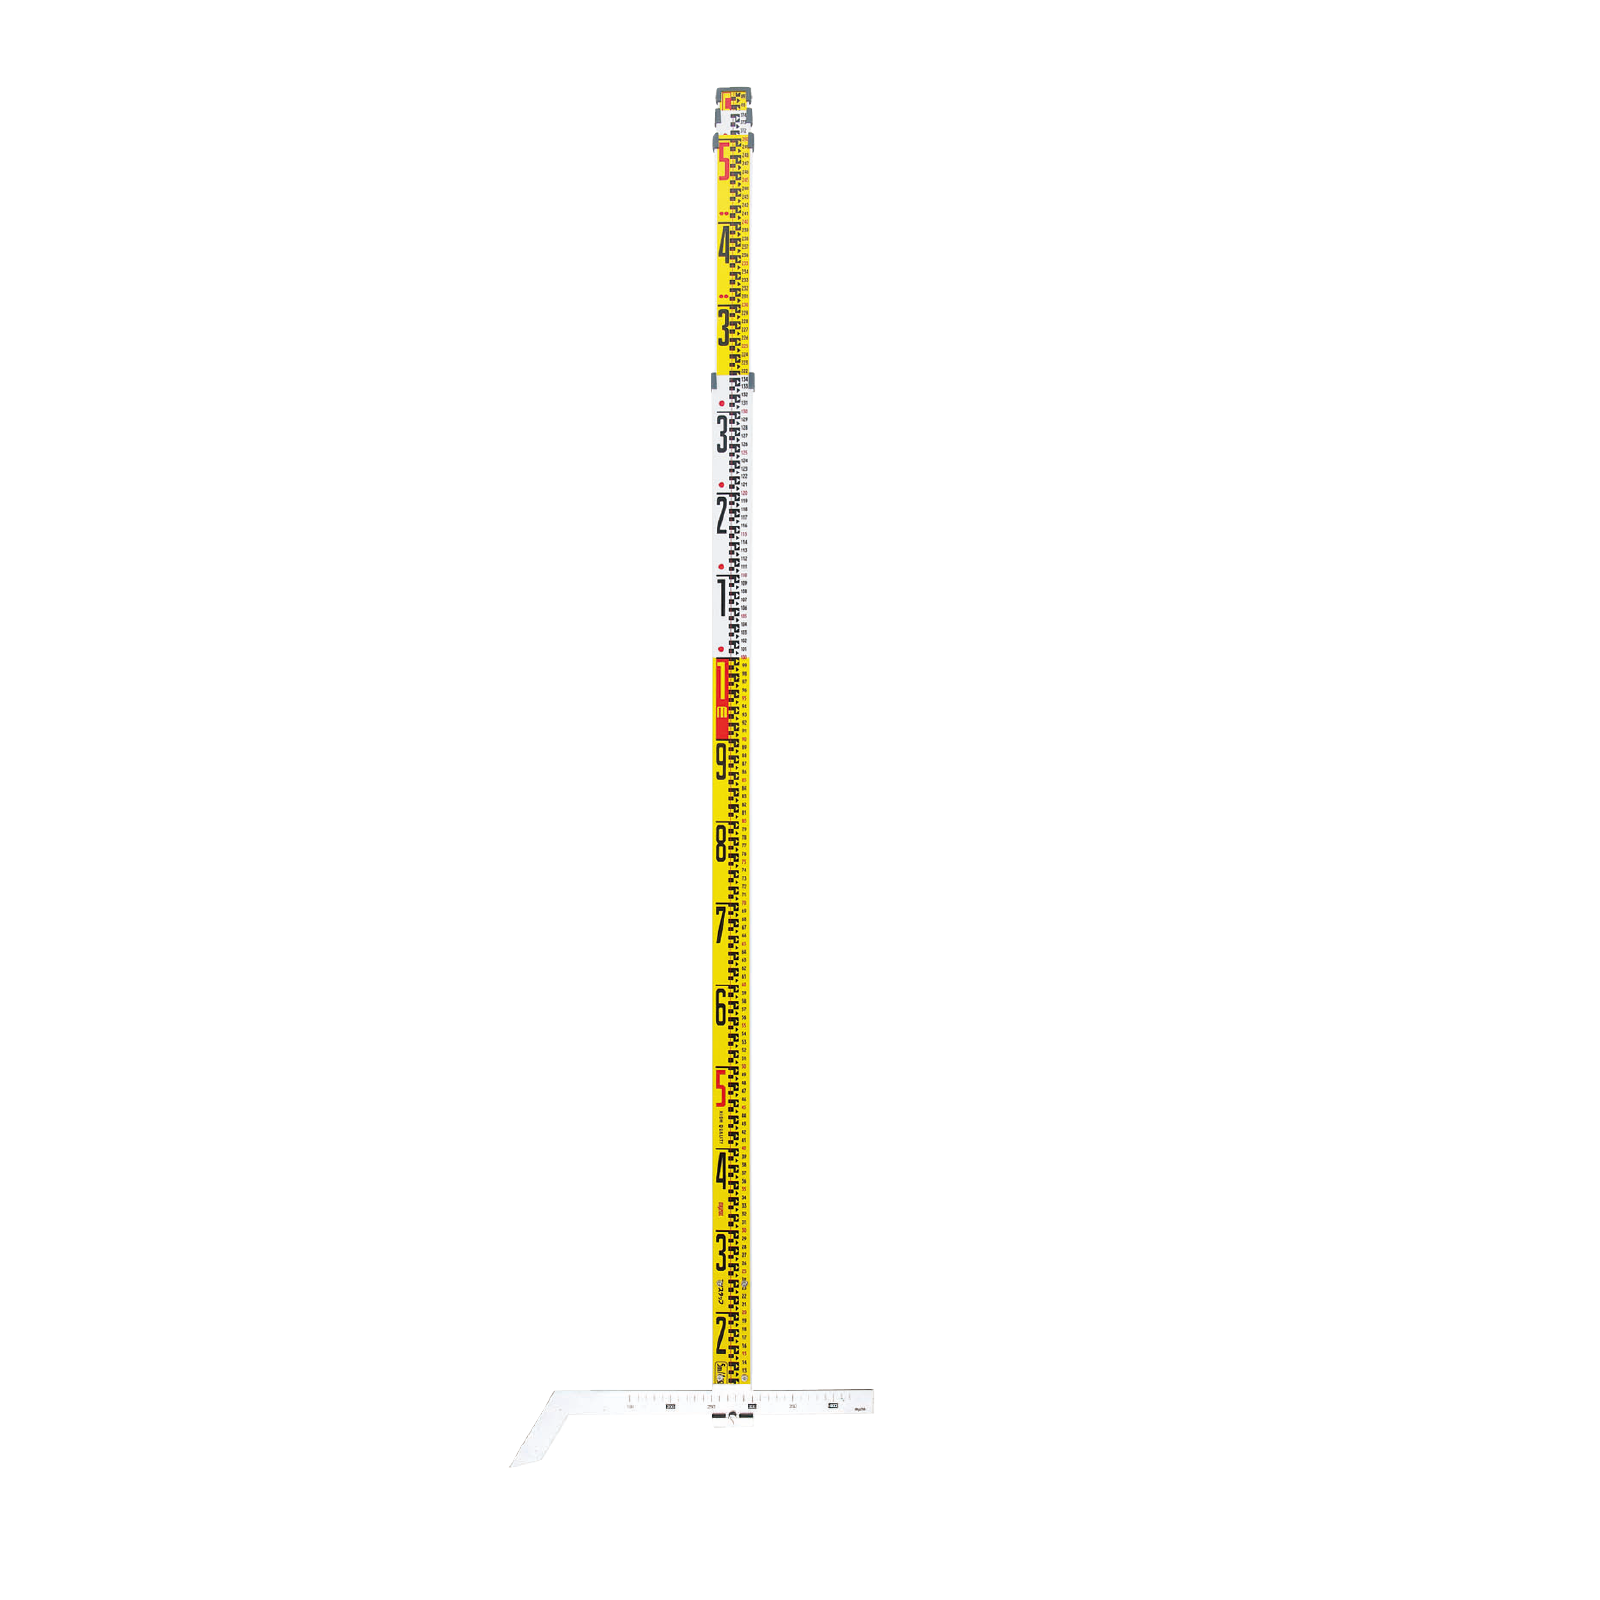 下水管スタッフ 5m×4段 SWG-54 210101 i-Net 測量・建設用品のプロショップ